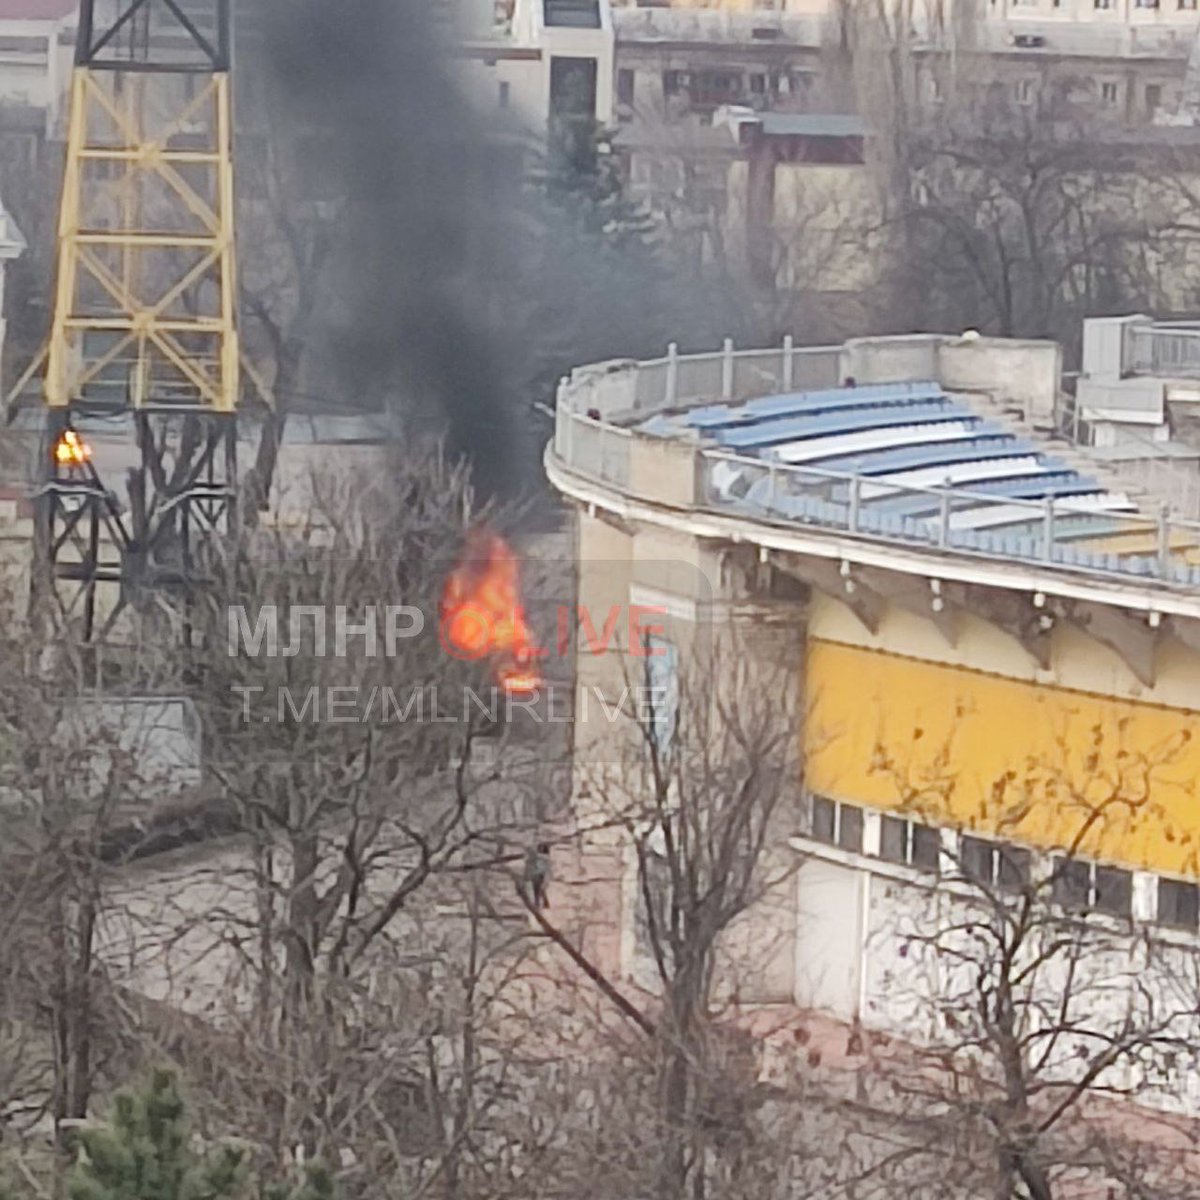 Un véhicule a explosé dans le centre de Louhansk